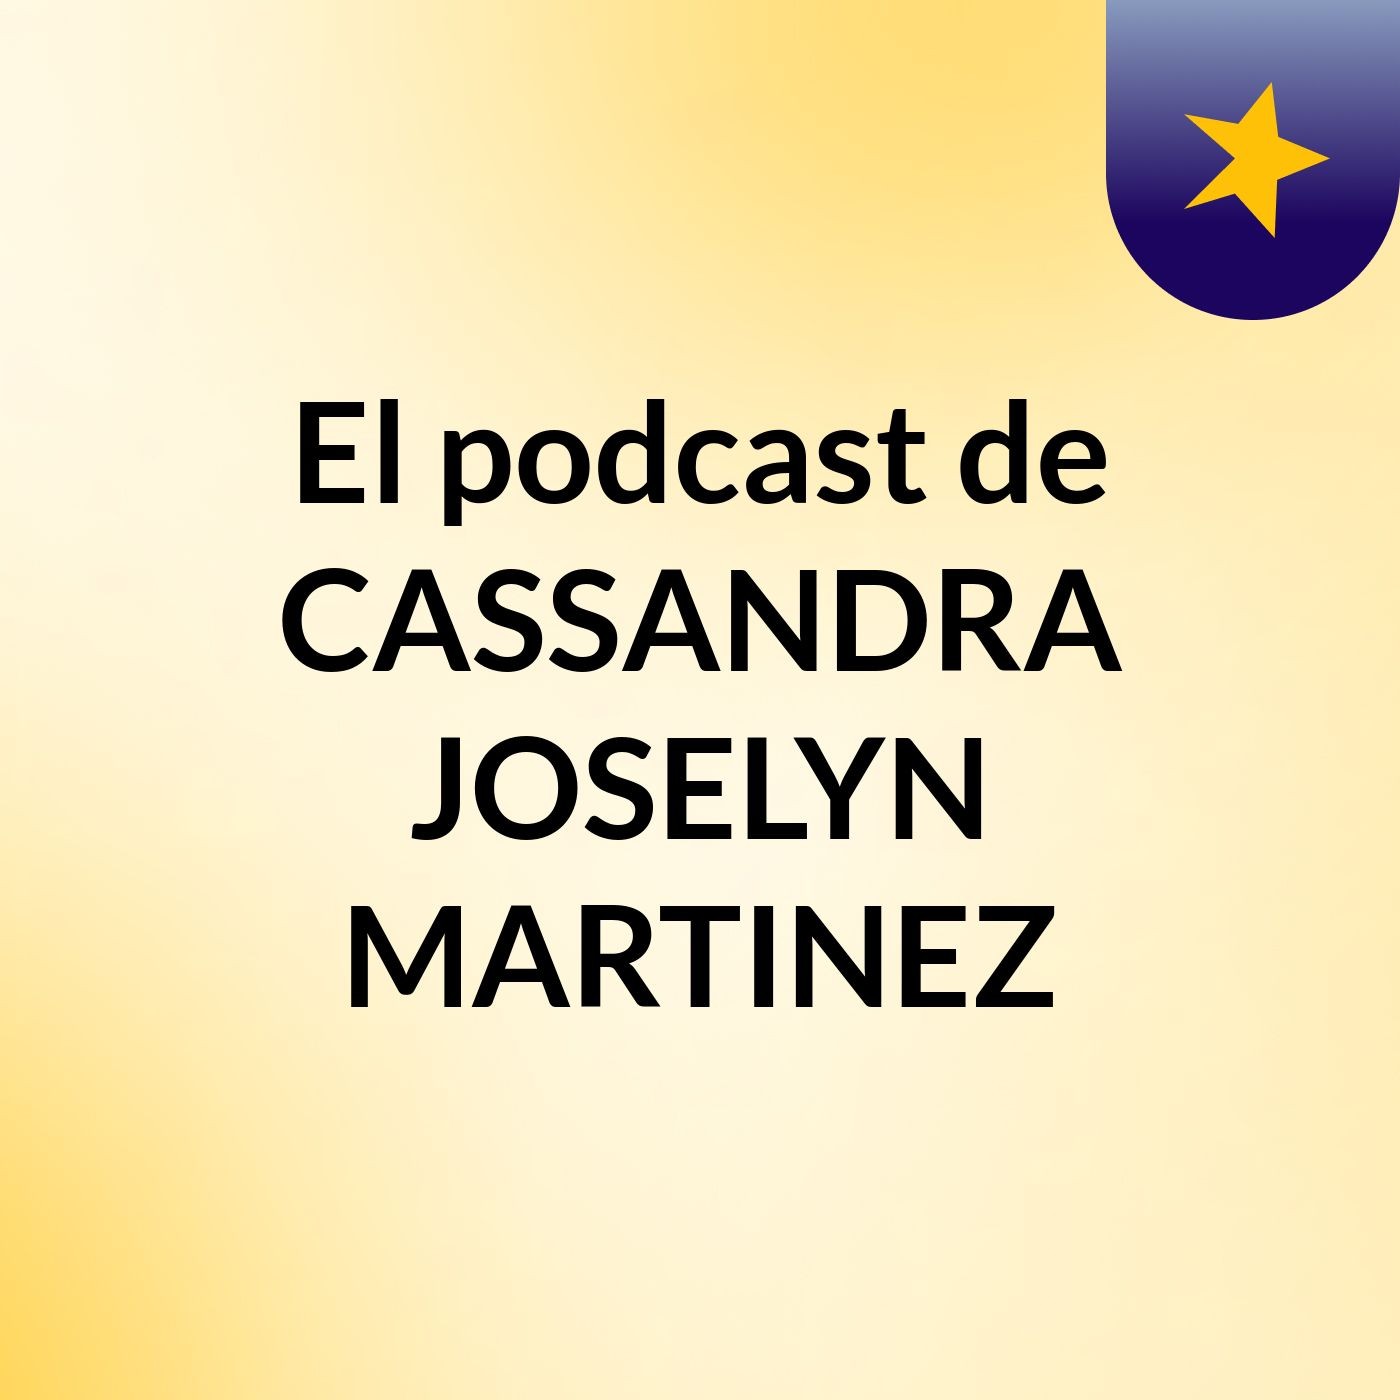 El podcast de CASSANDRA JOSELYN MARTINEZ